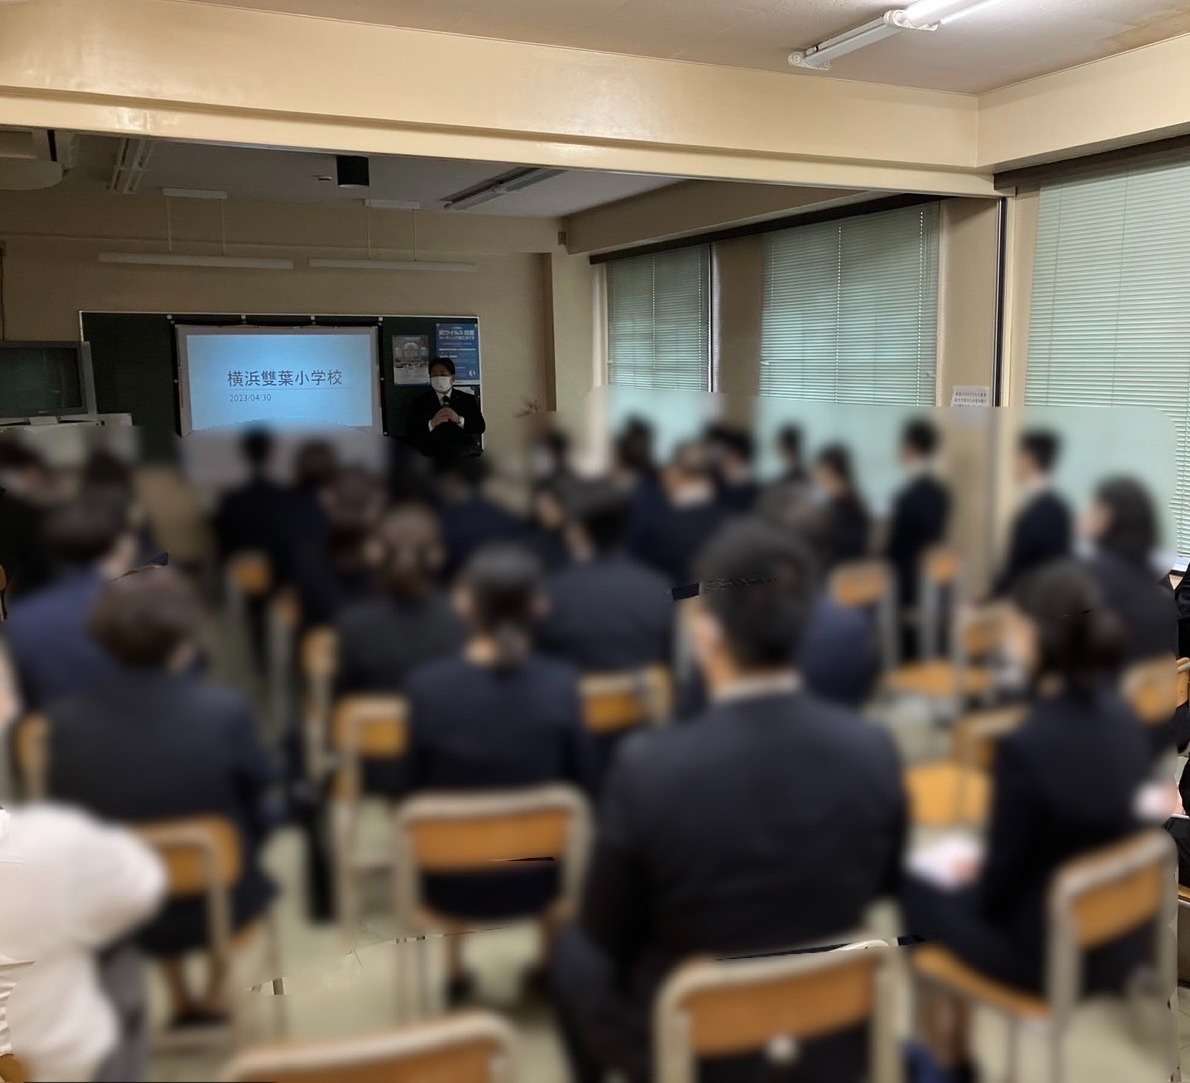 横浜雙葉小学校 池田純一郎校長先生と小滝美佐教頭先生をお迎えし、座談会を開催いたしました。